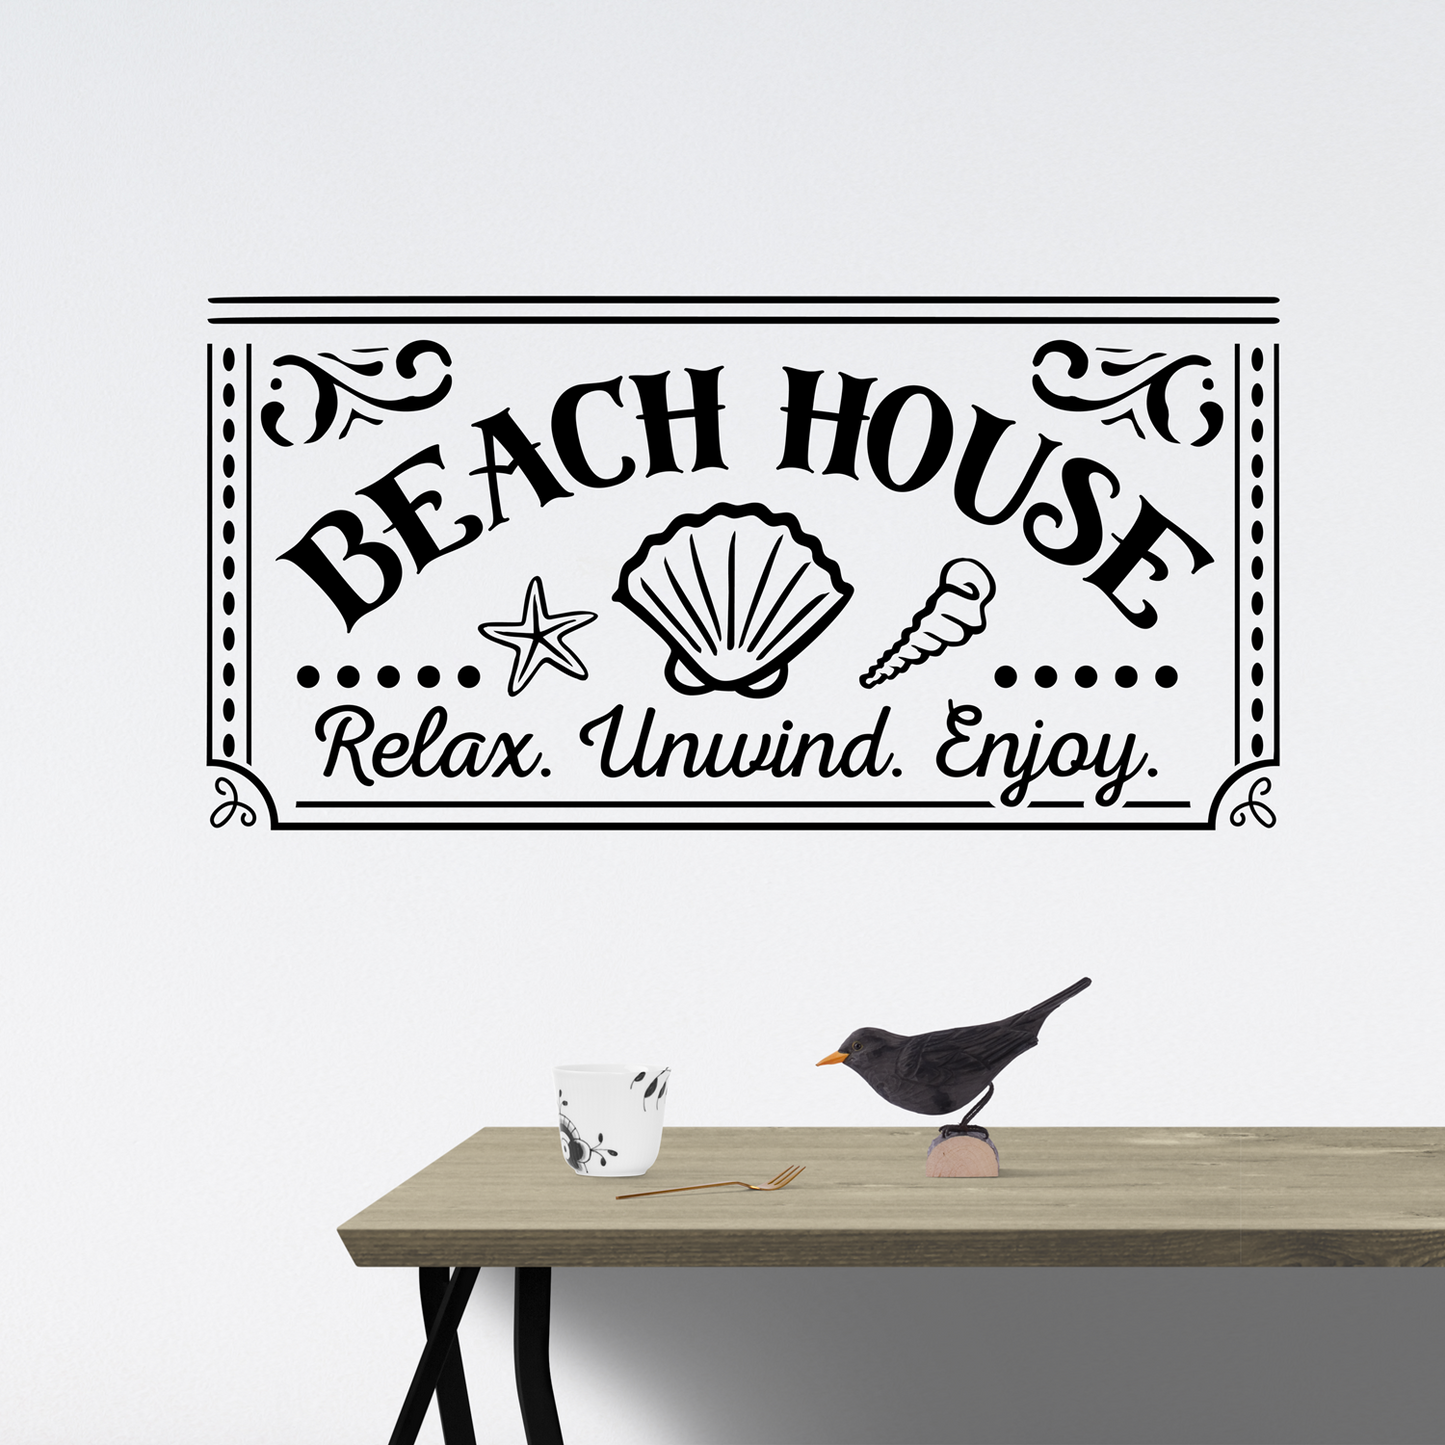 beach house sign